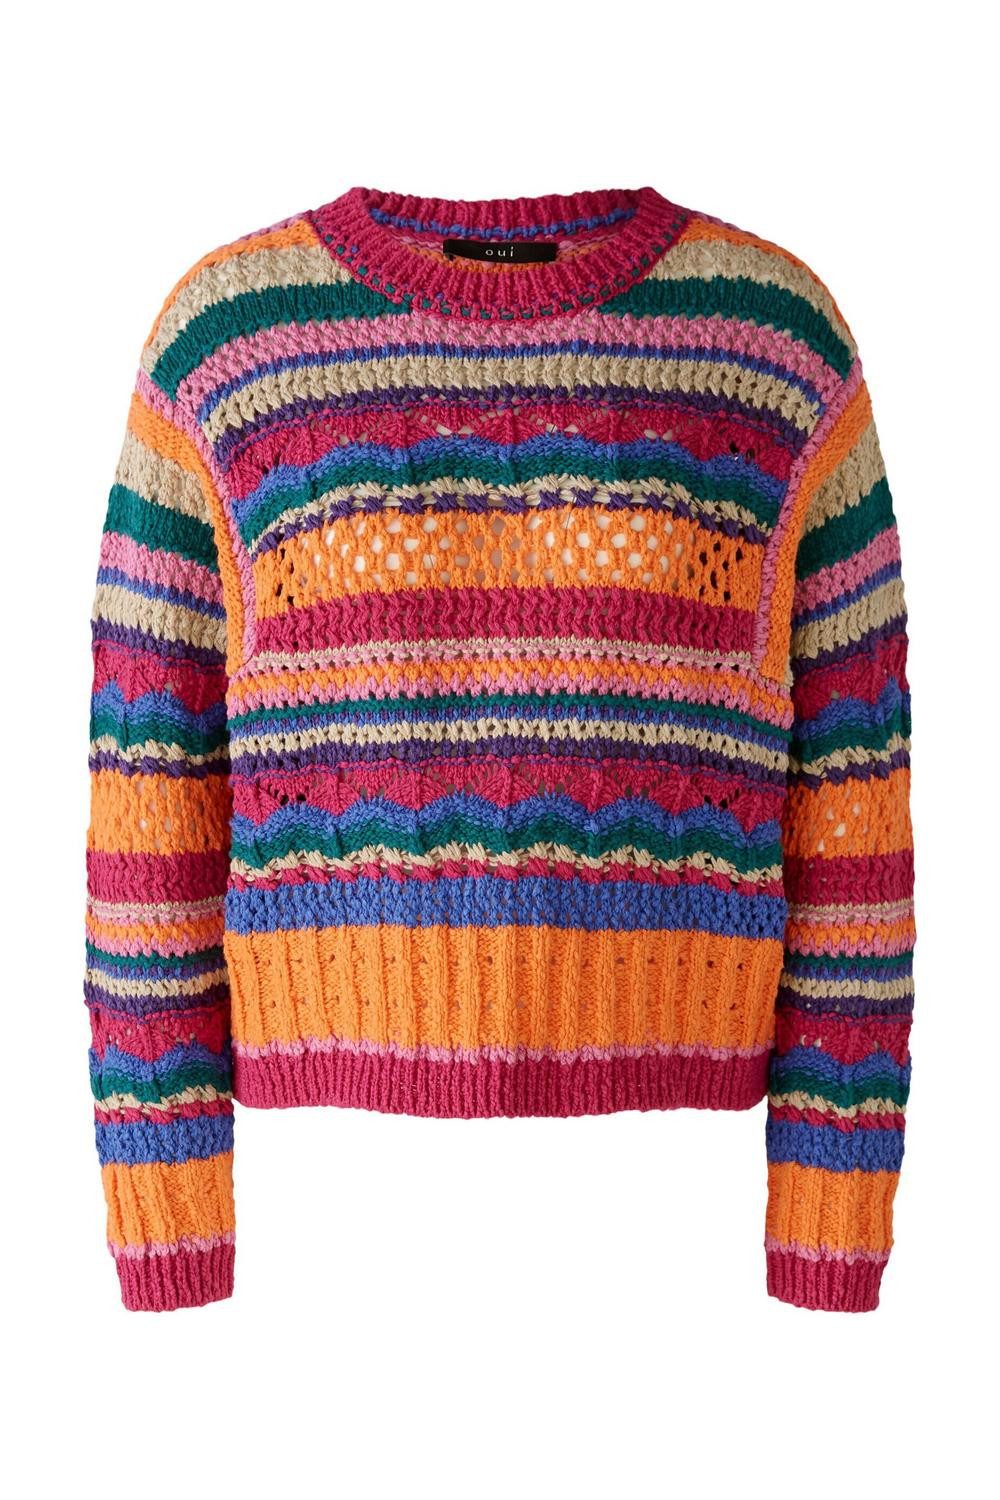 Oui Sweatshirt Пуловери, pink orange